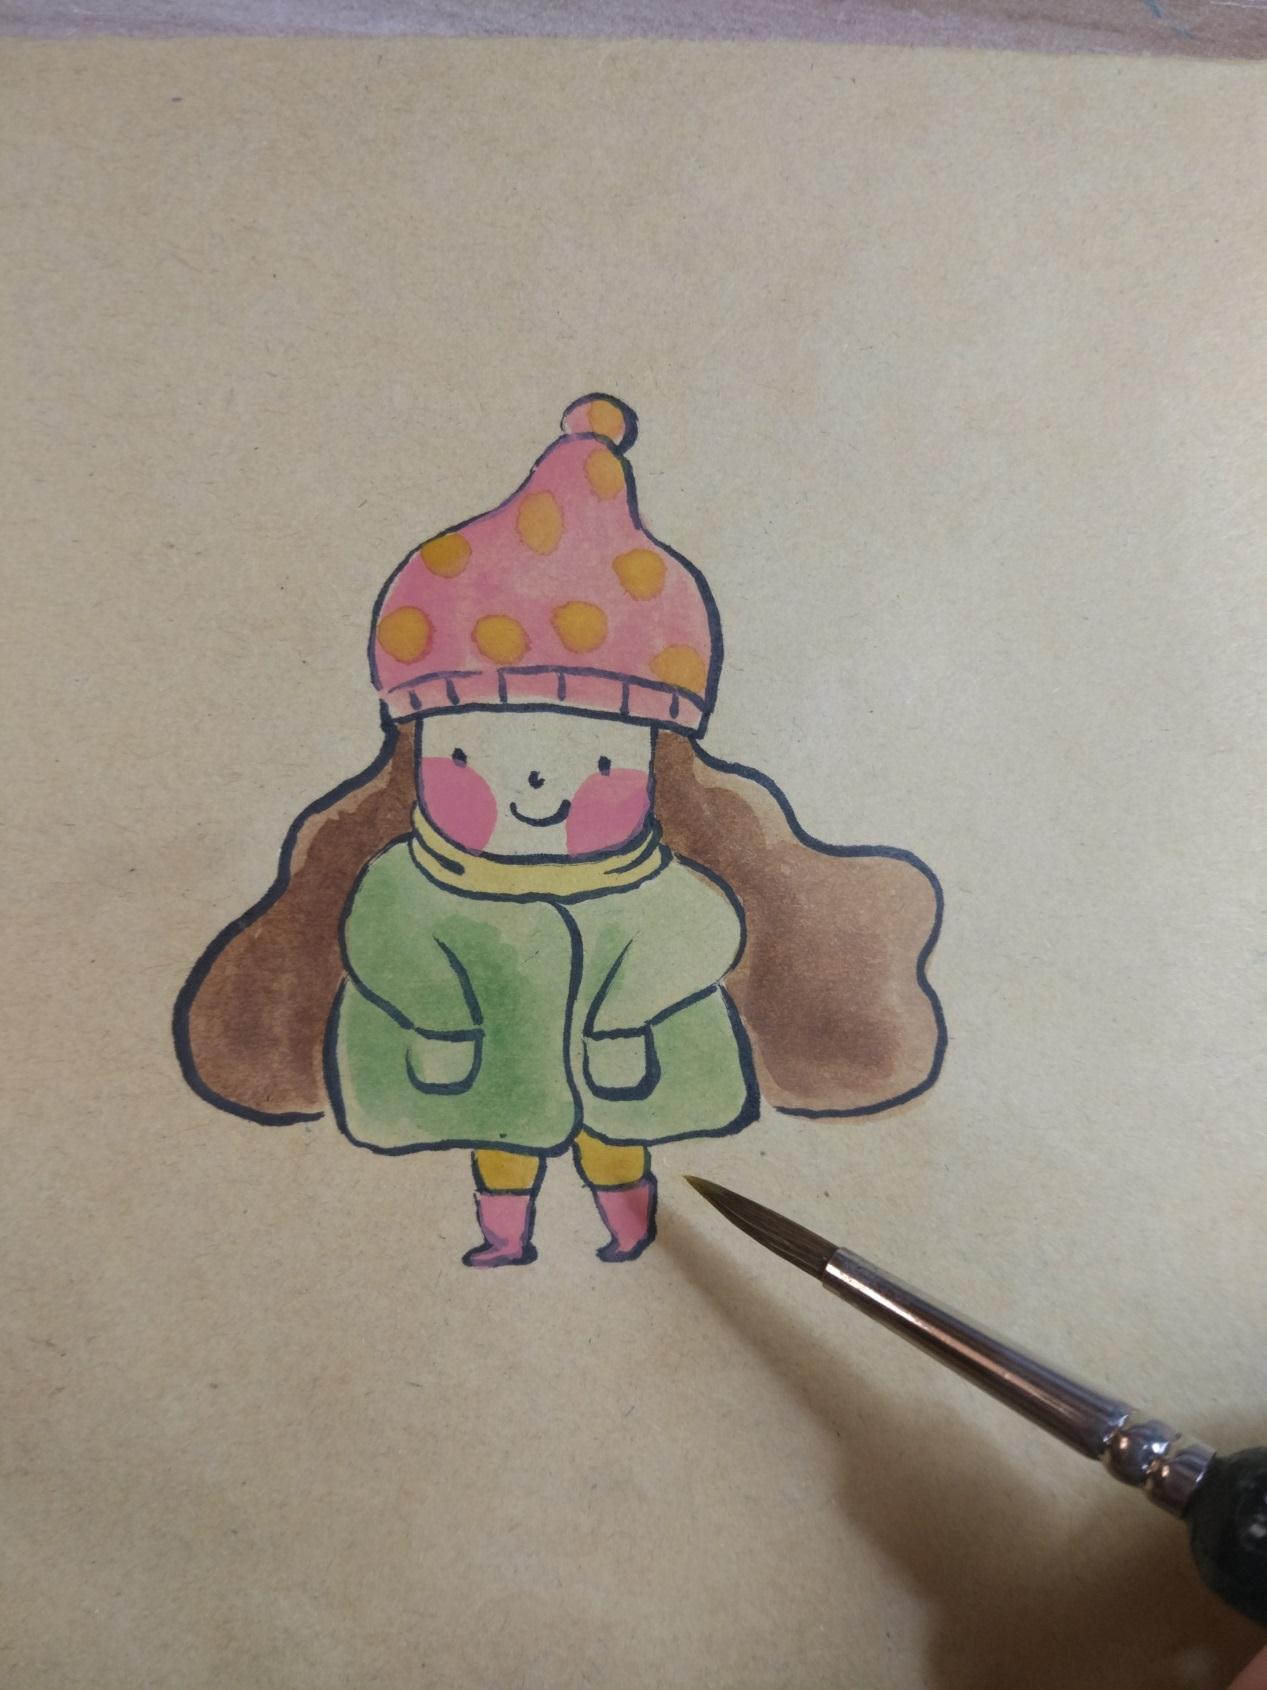 宋宋教你用牛皮纸和彩笔画一张特别可爱的小女孩彩绘画